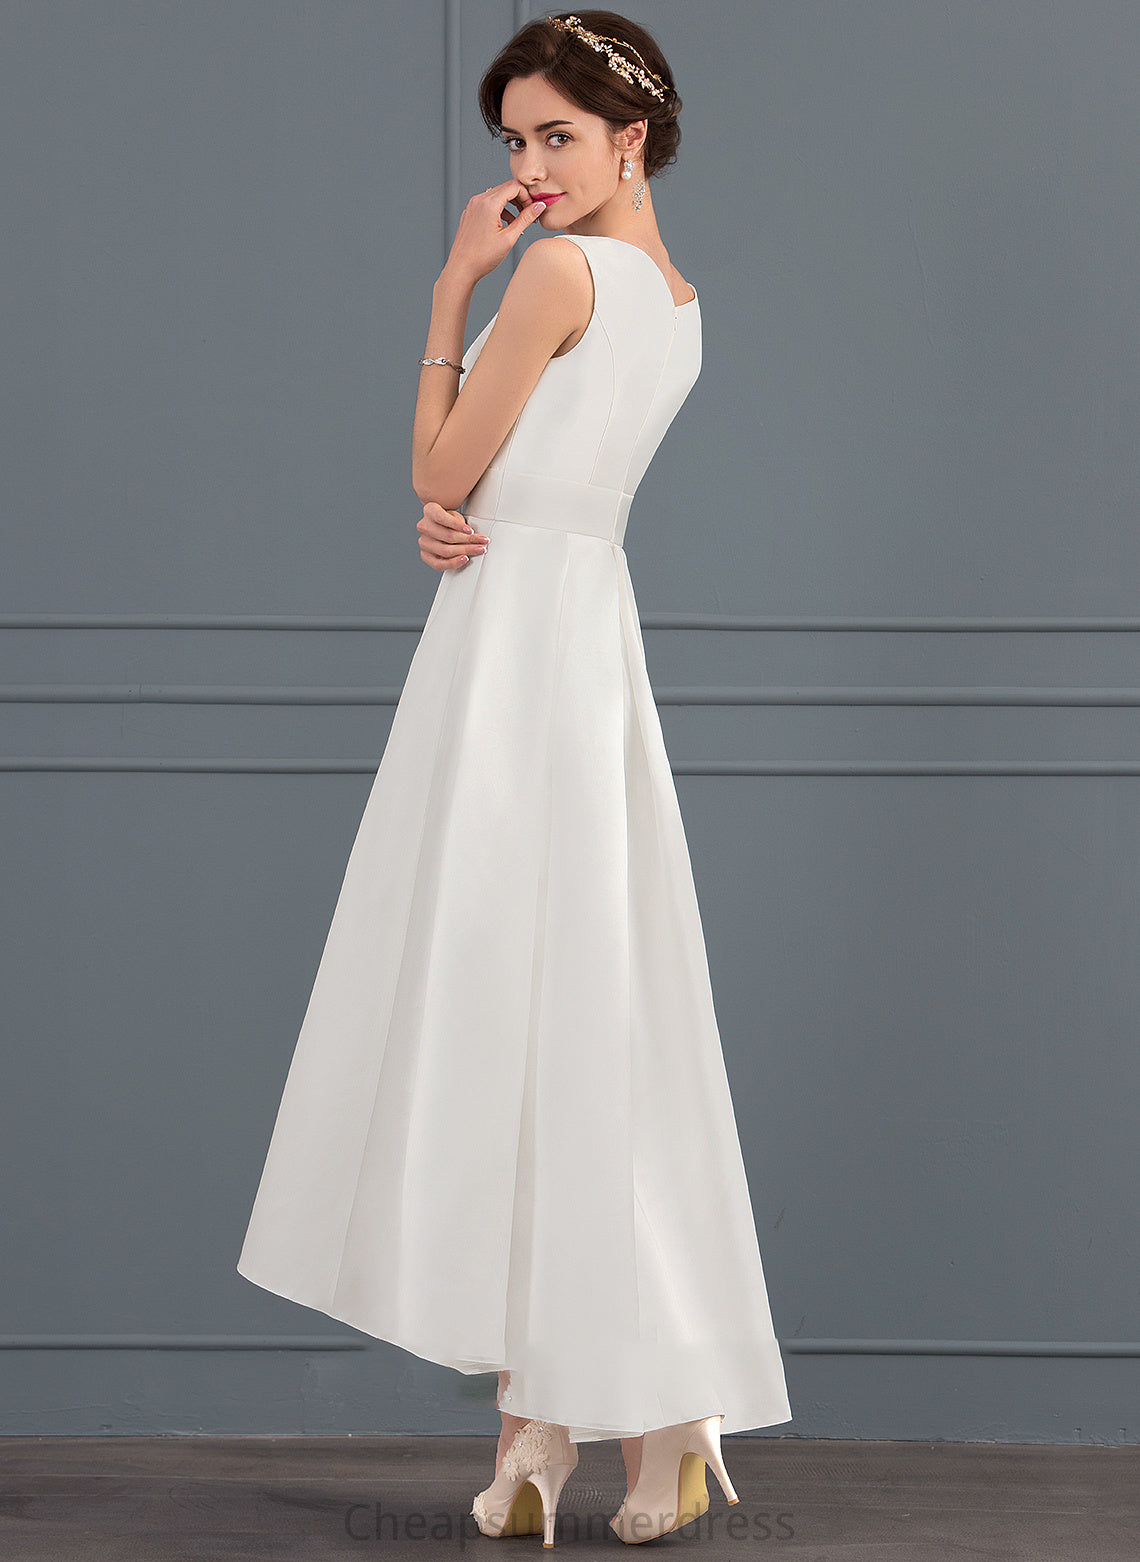 A-Line Dress Wedding Dresses Neckline India Wedding Square Satin Asymmetrical